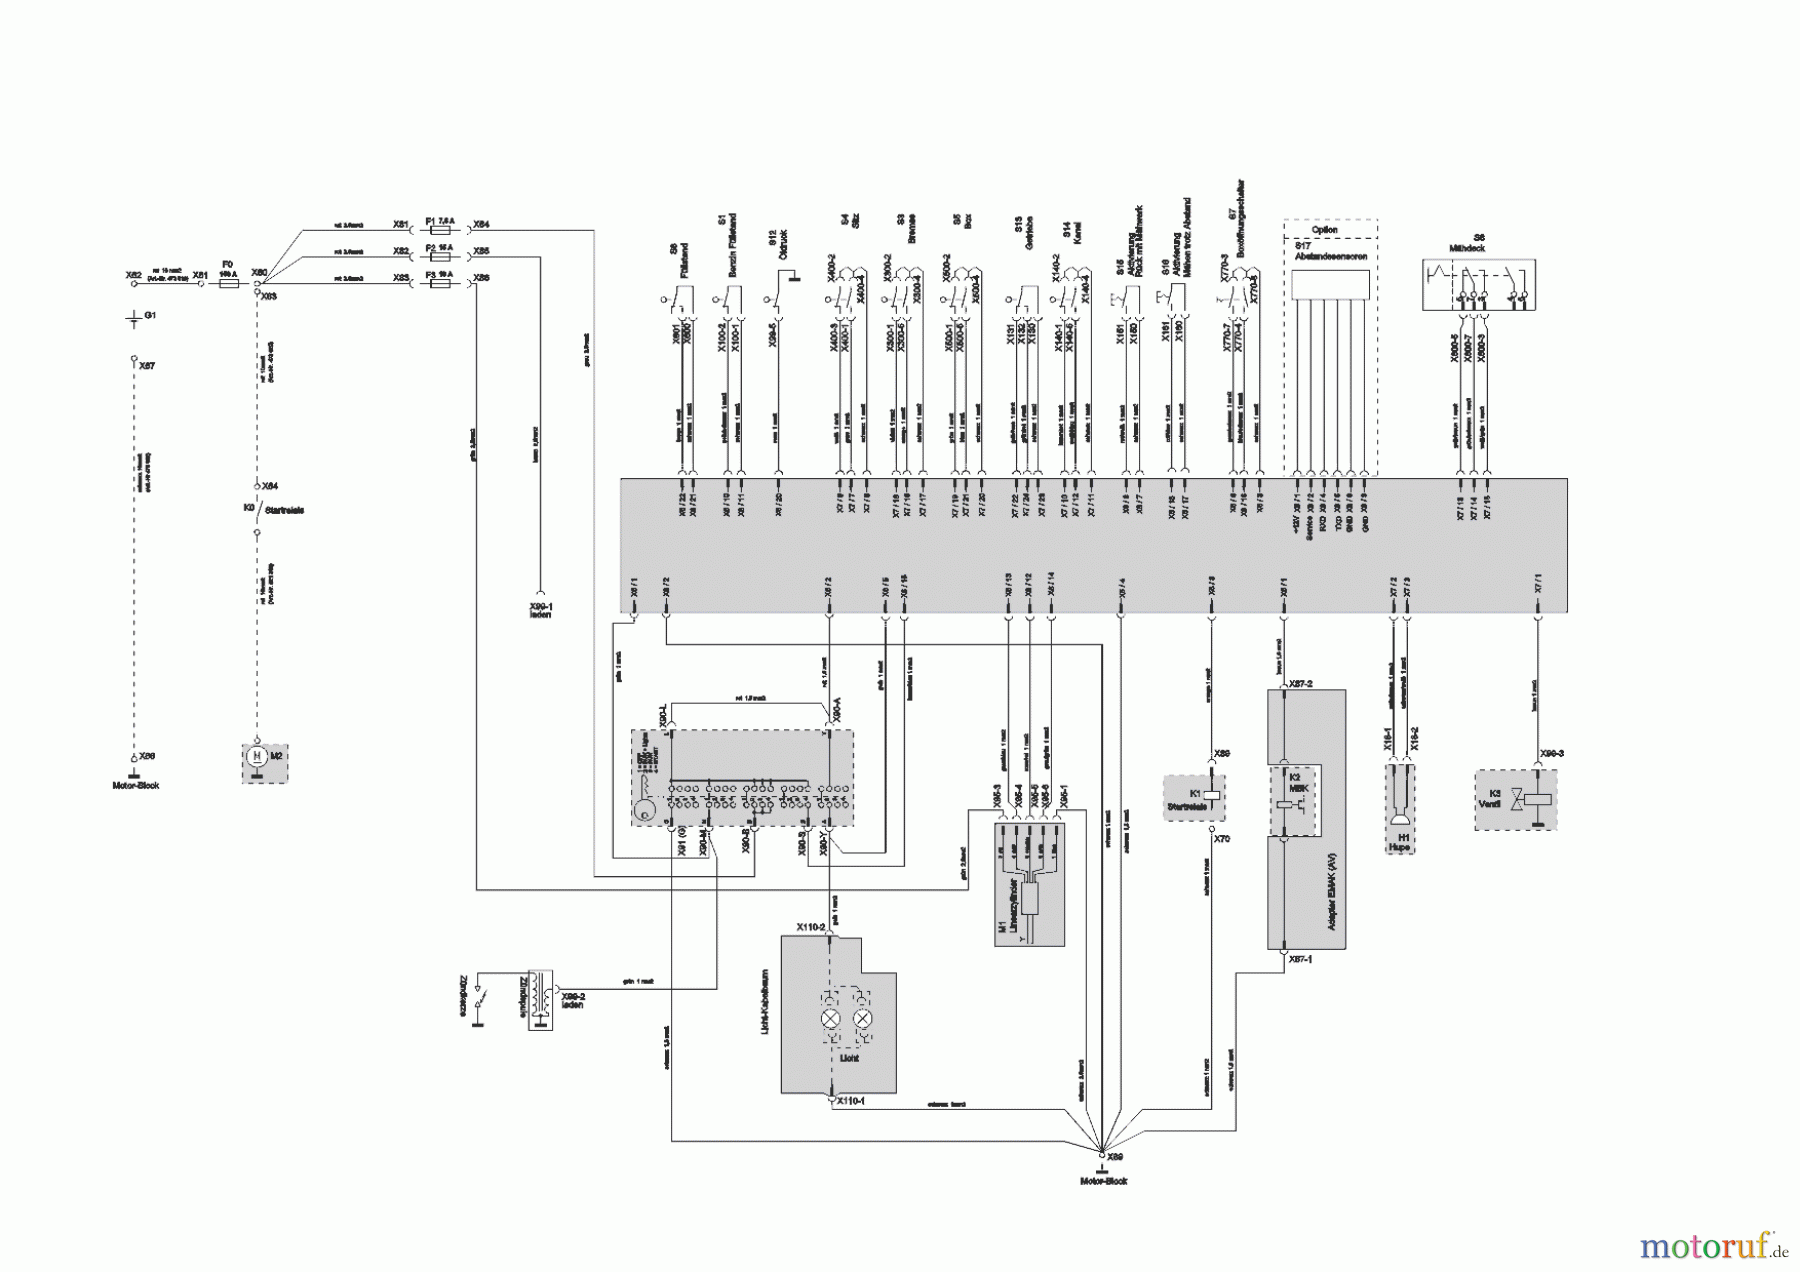  Powerline Gartentechnik Rasentraktor  T23-125.4 HD V2  ab 02/2019 Seite 11